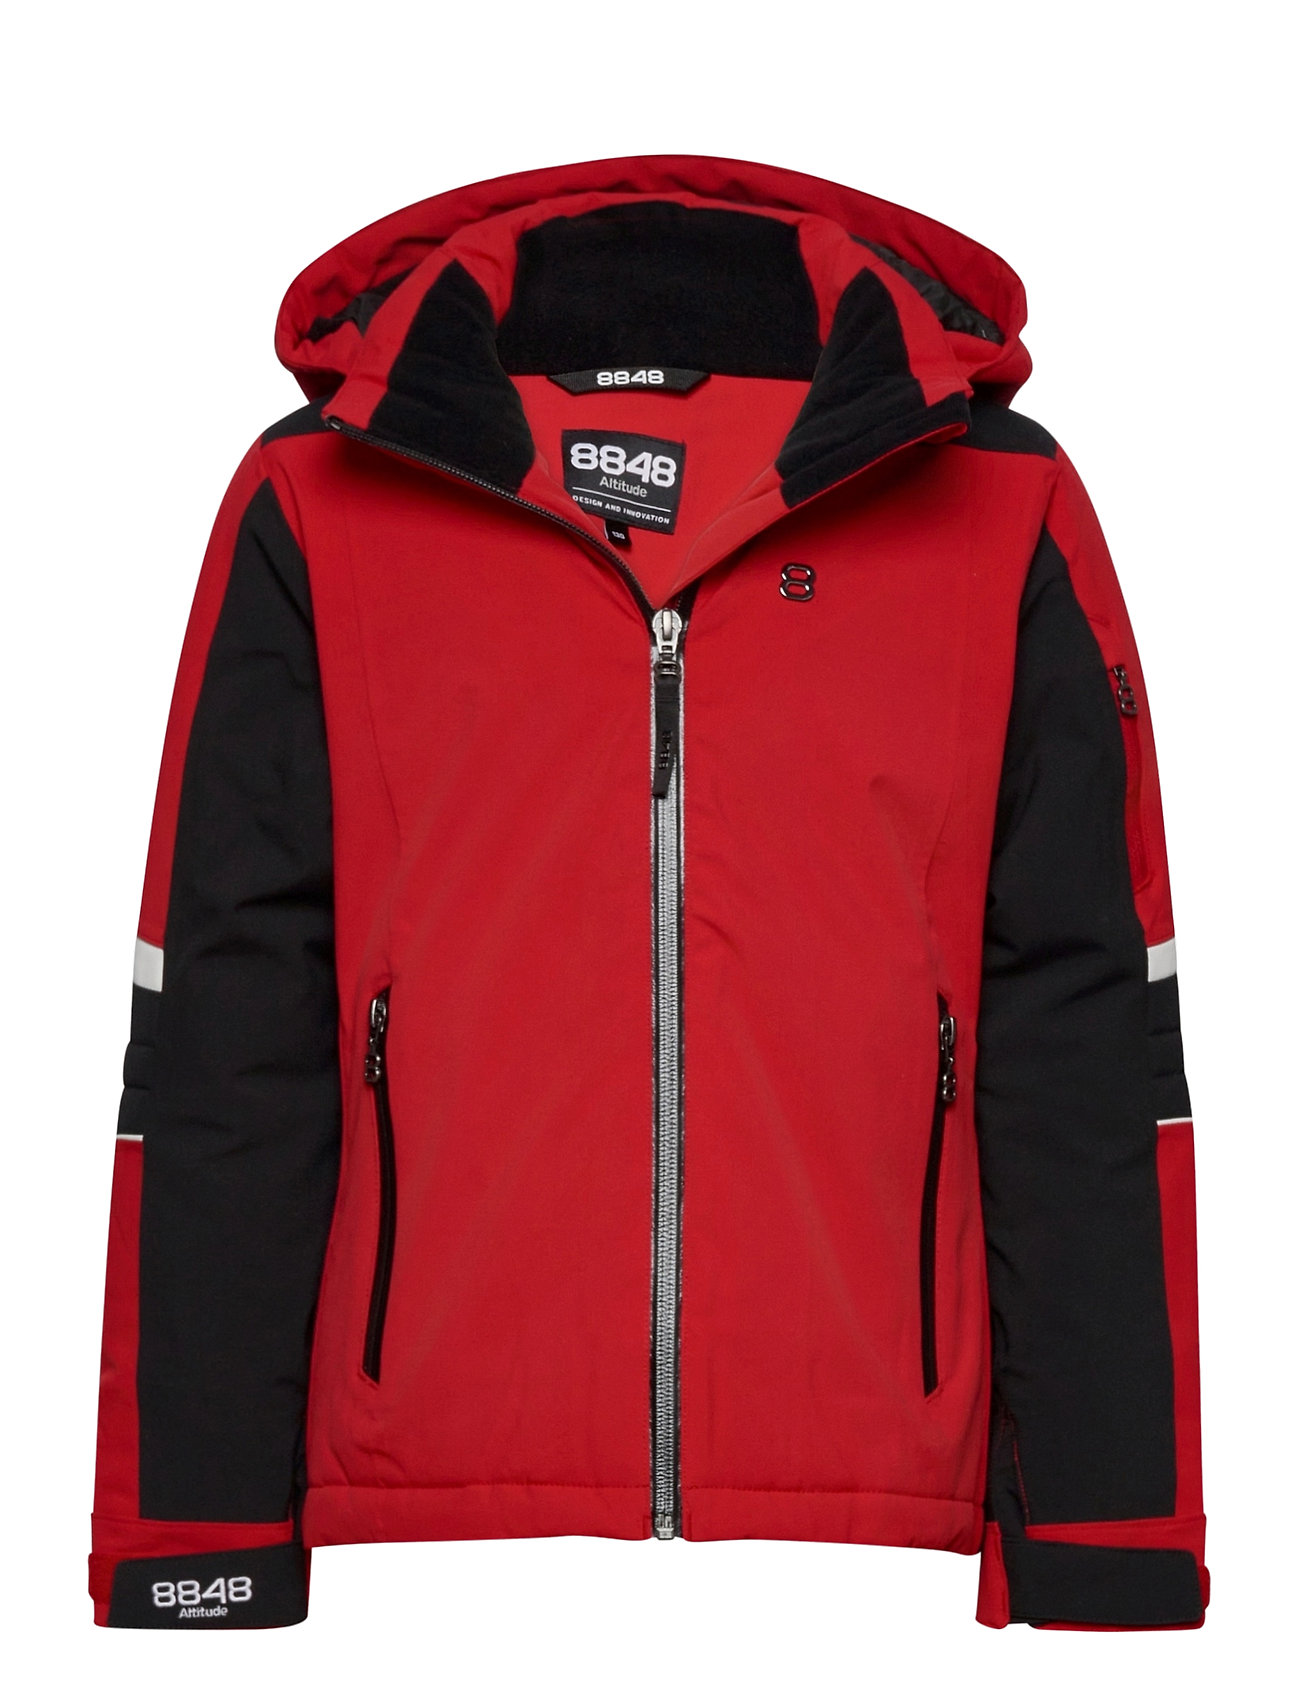 Rianni Jr Jacket Outerwear Snow/ski Clothing Snow/ski Jacket Punainen 8848 Altitude